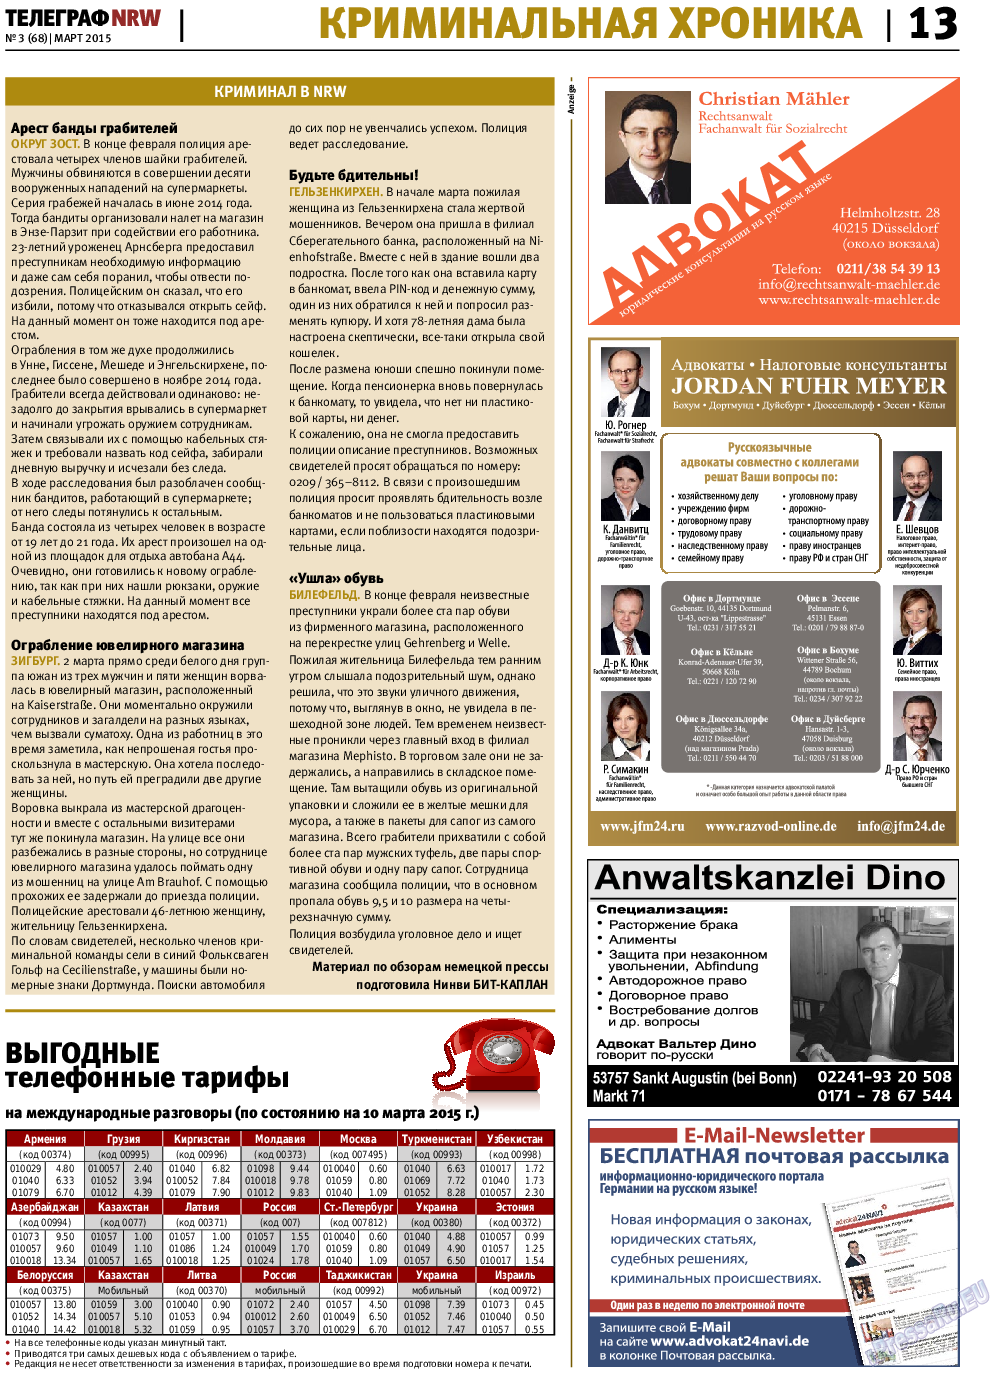 Телеграф NRW (газета). 2015 год, номер 3, стр. 13